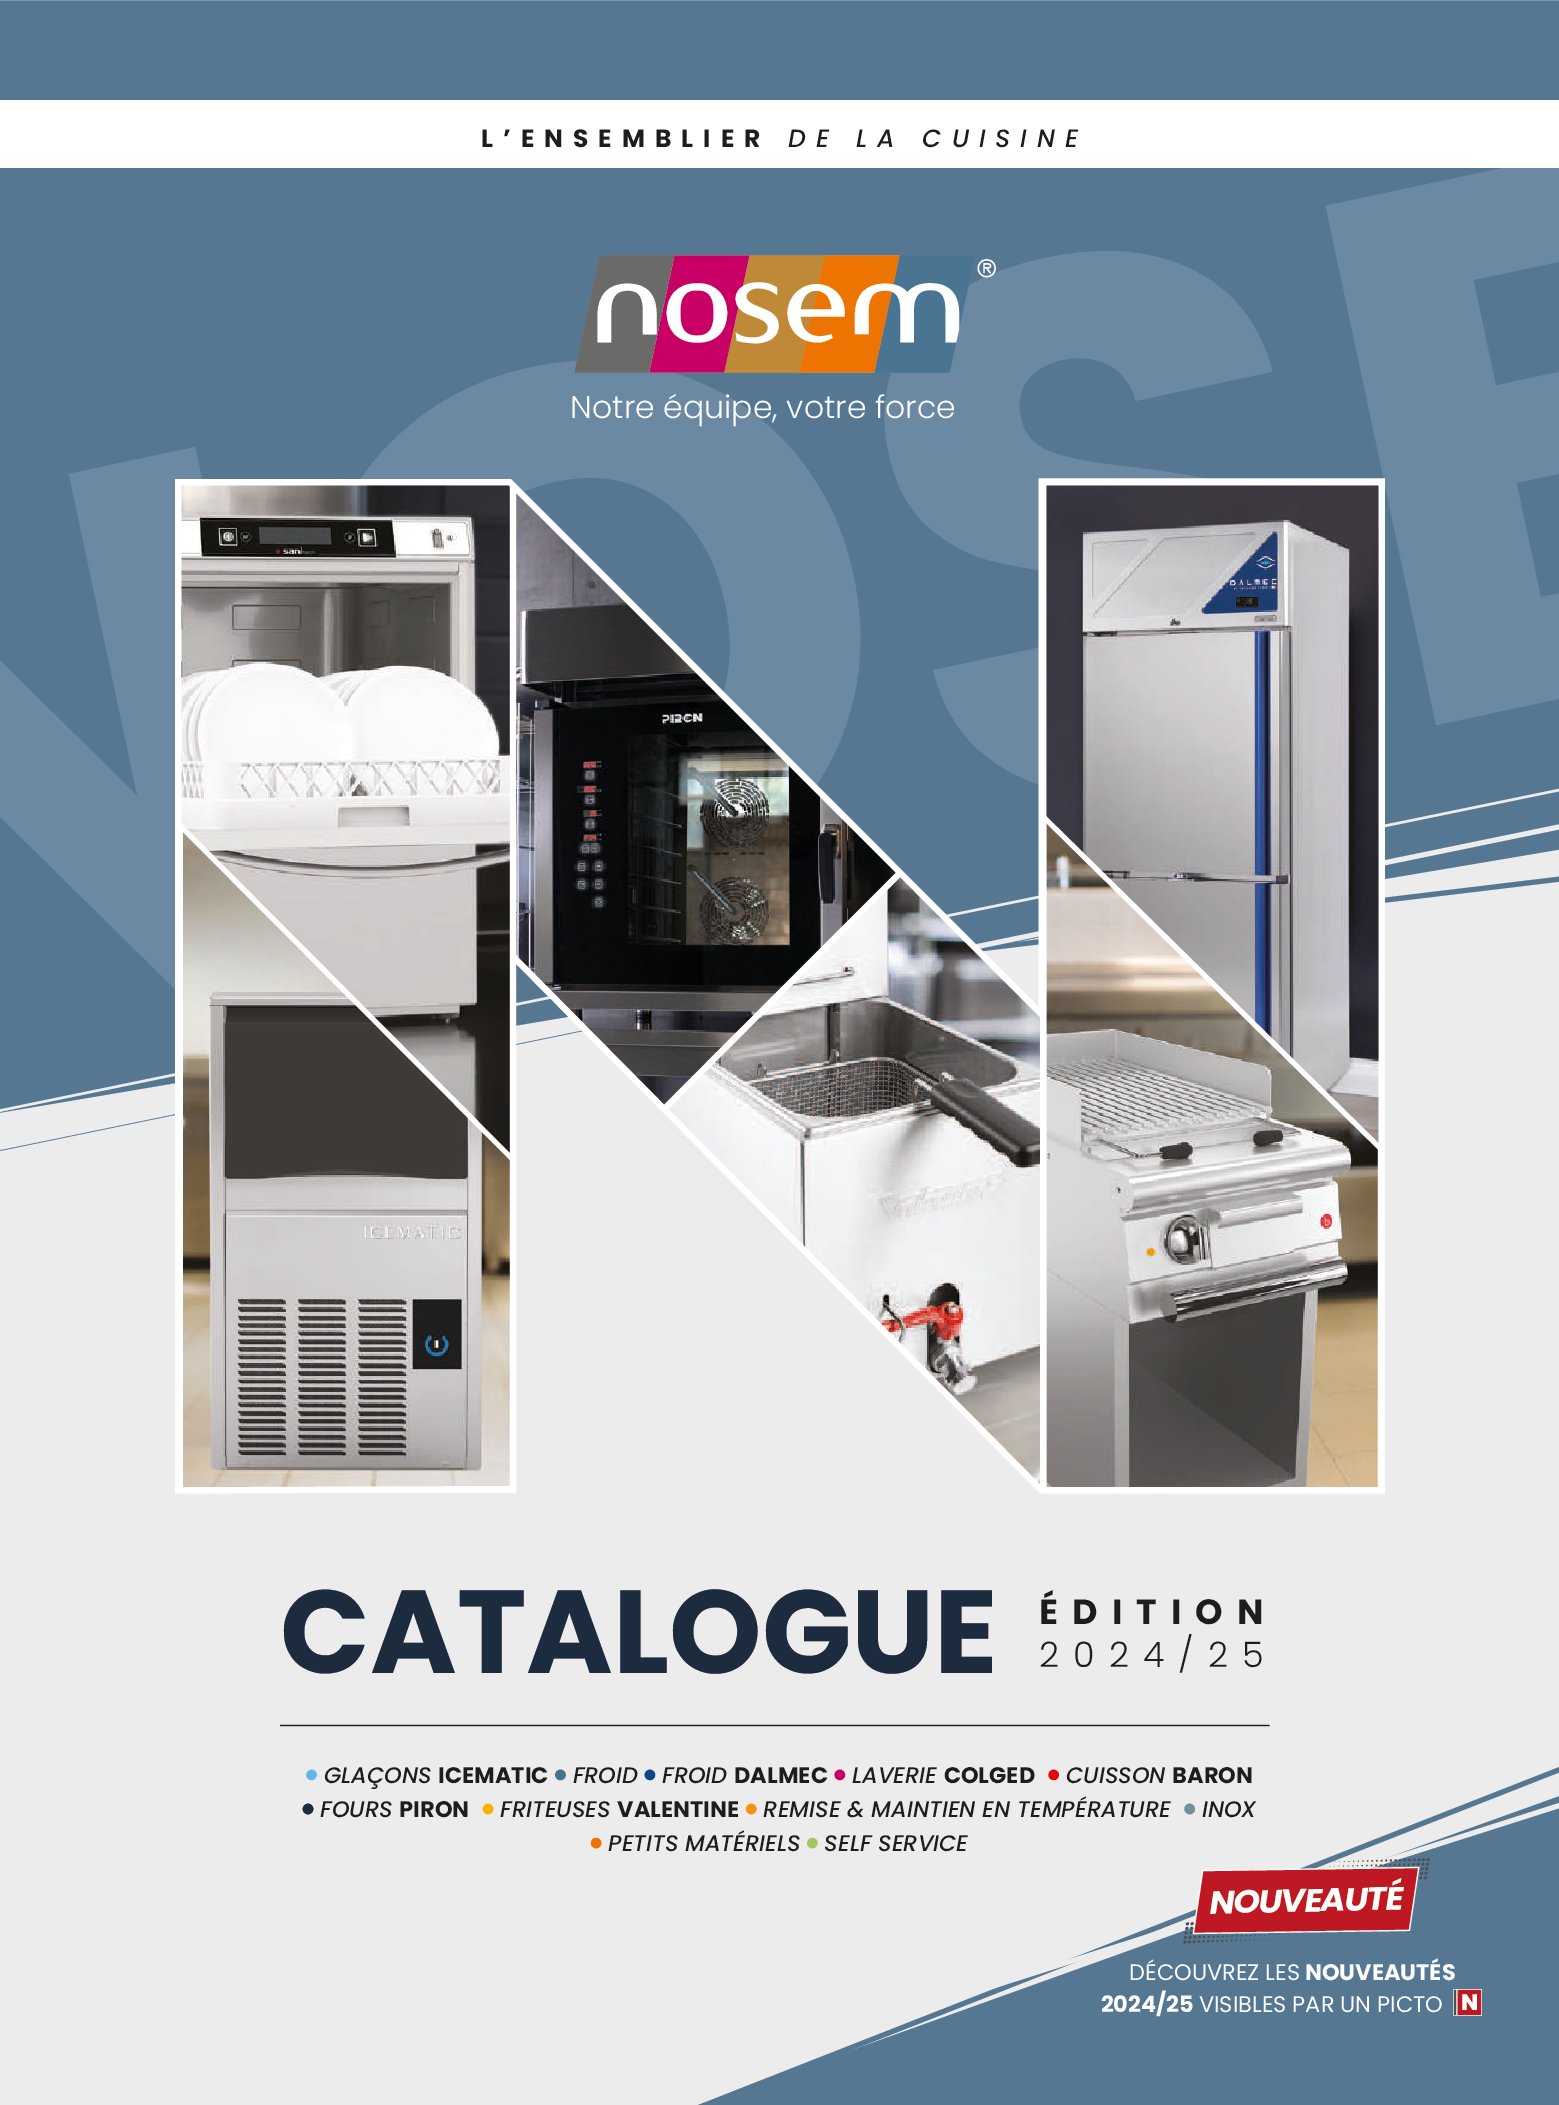 Catalogue tarif NOSEM 2020 / 2021 SANS PRIX